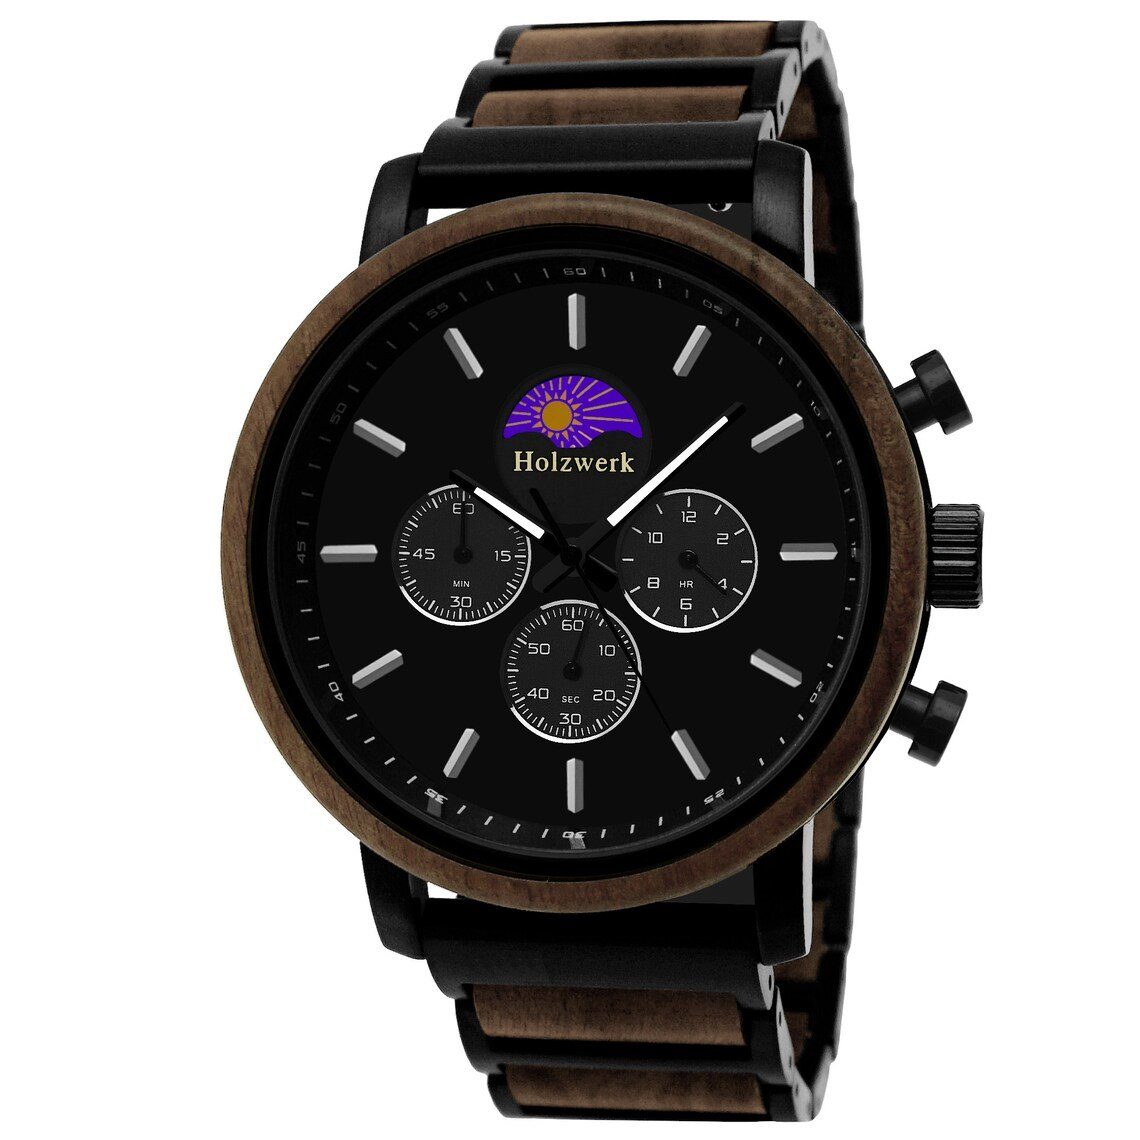 Herren Holzwerk Mondphase, & BASSUM Edelstahl Uhr, Armband schwarz, Chronograph Holz braun